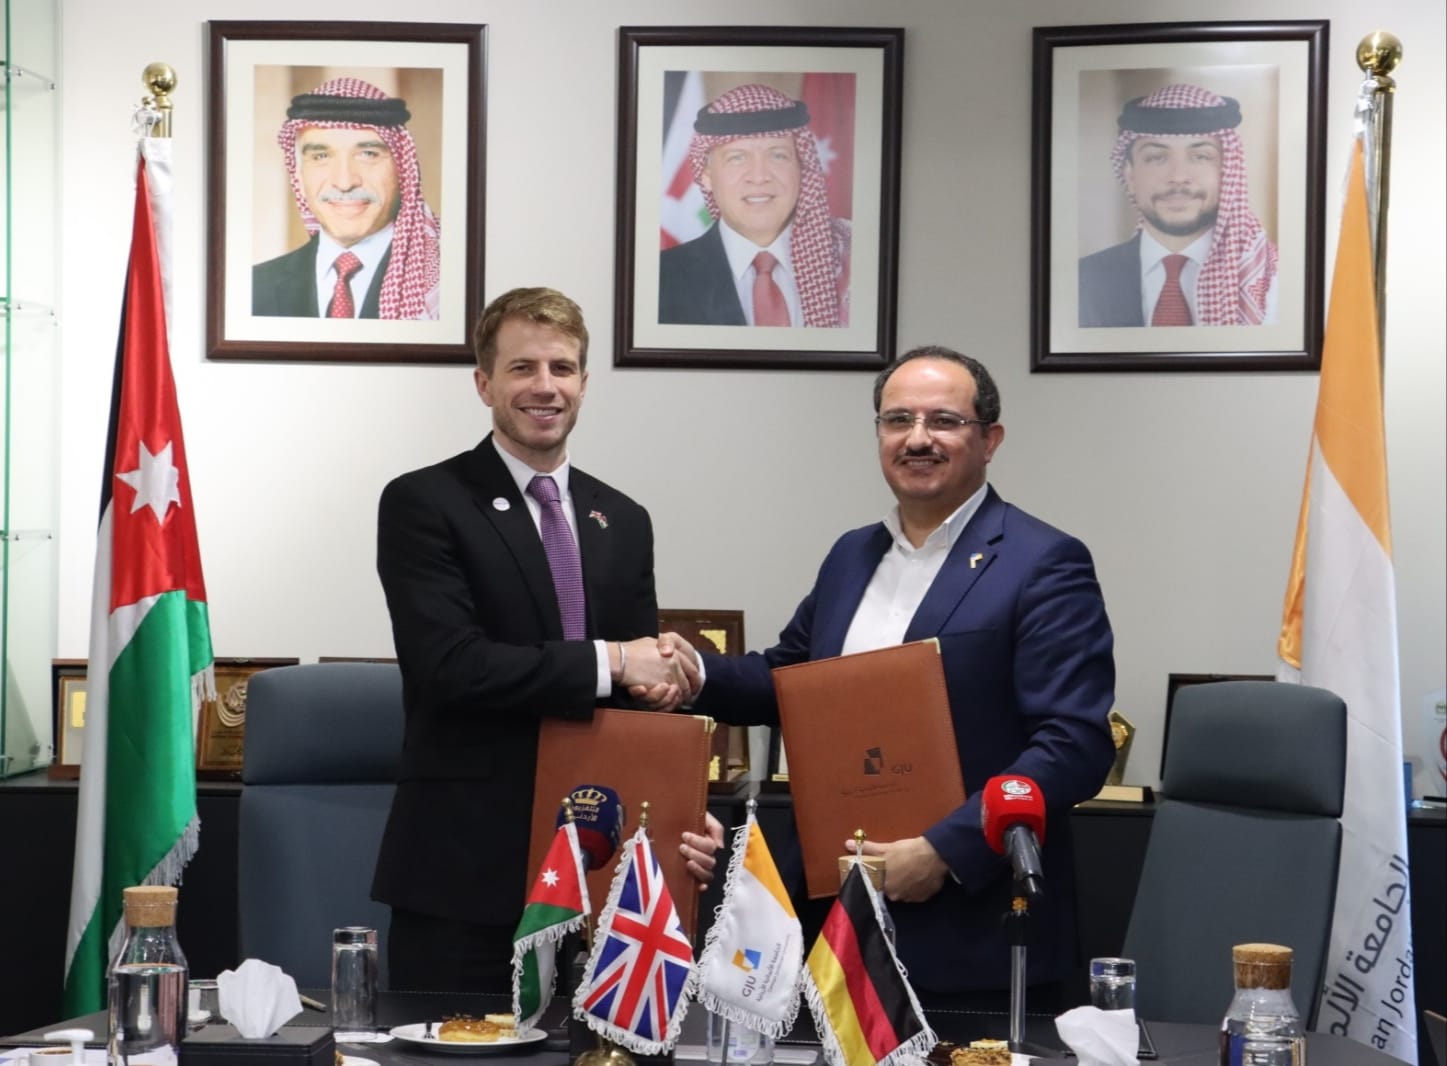 المجلس الثقافي البريطاني في الأردن يوقّع شراكة جديدة مع الجامعة الألمانية الأردنية لتقديم اختبارات الآيلتس